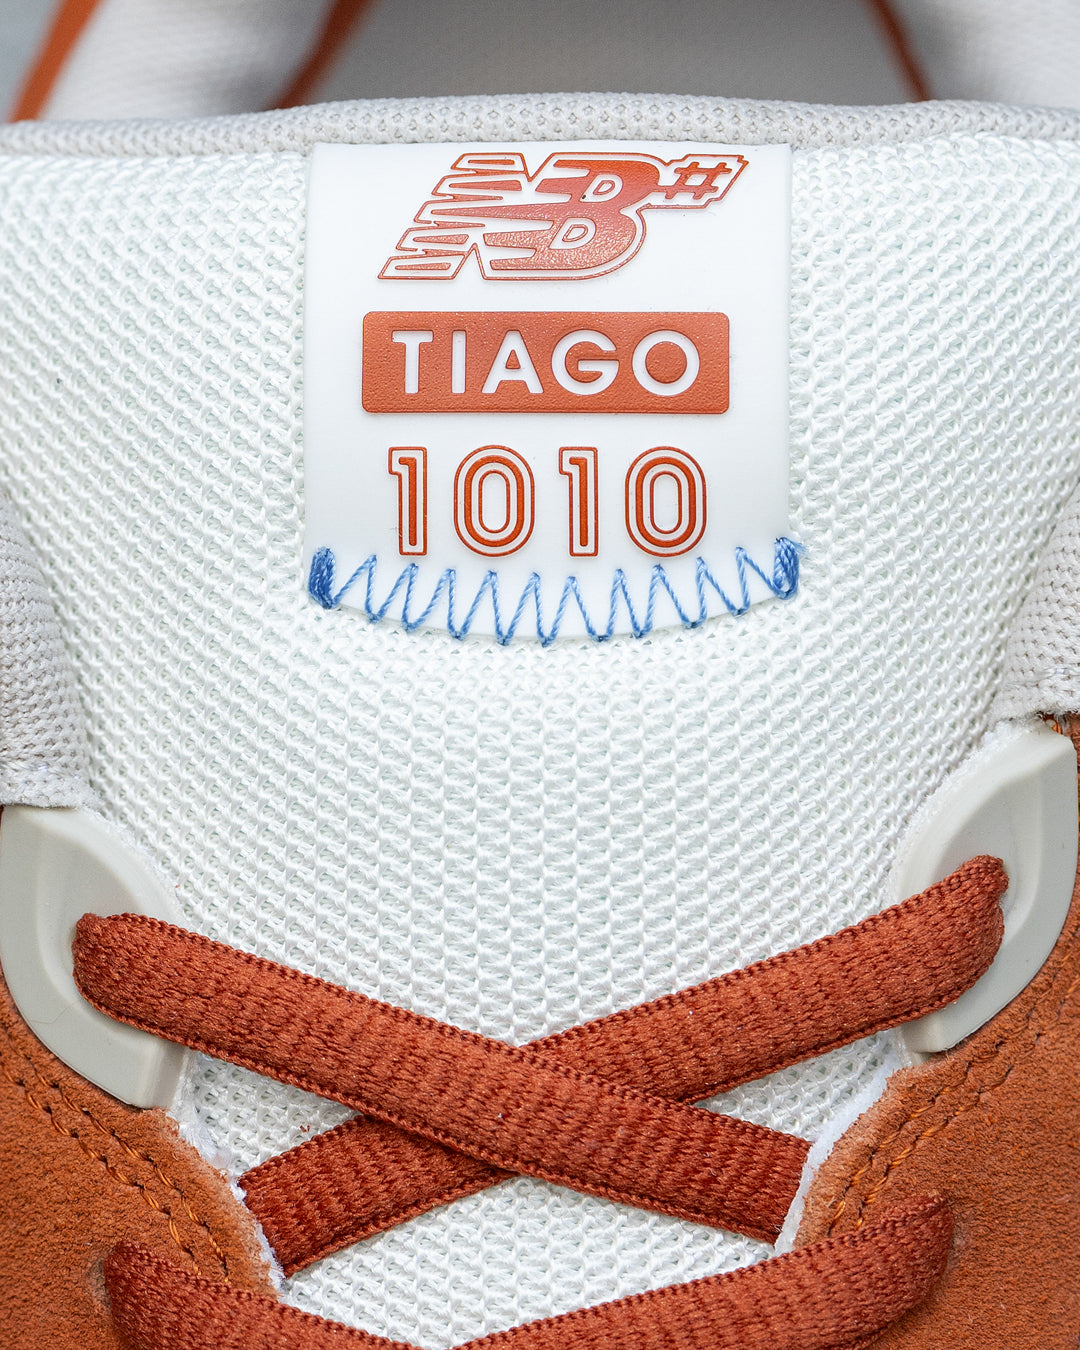 New Balance Numeric Tiago Lemos 1010 Rust Orange/Cream